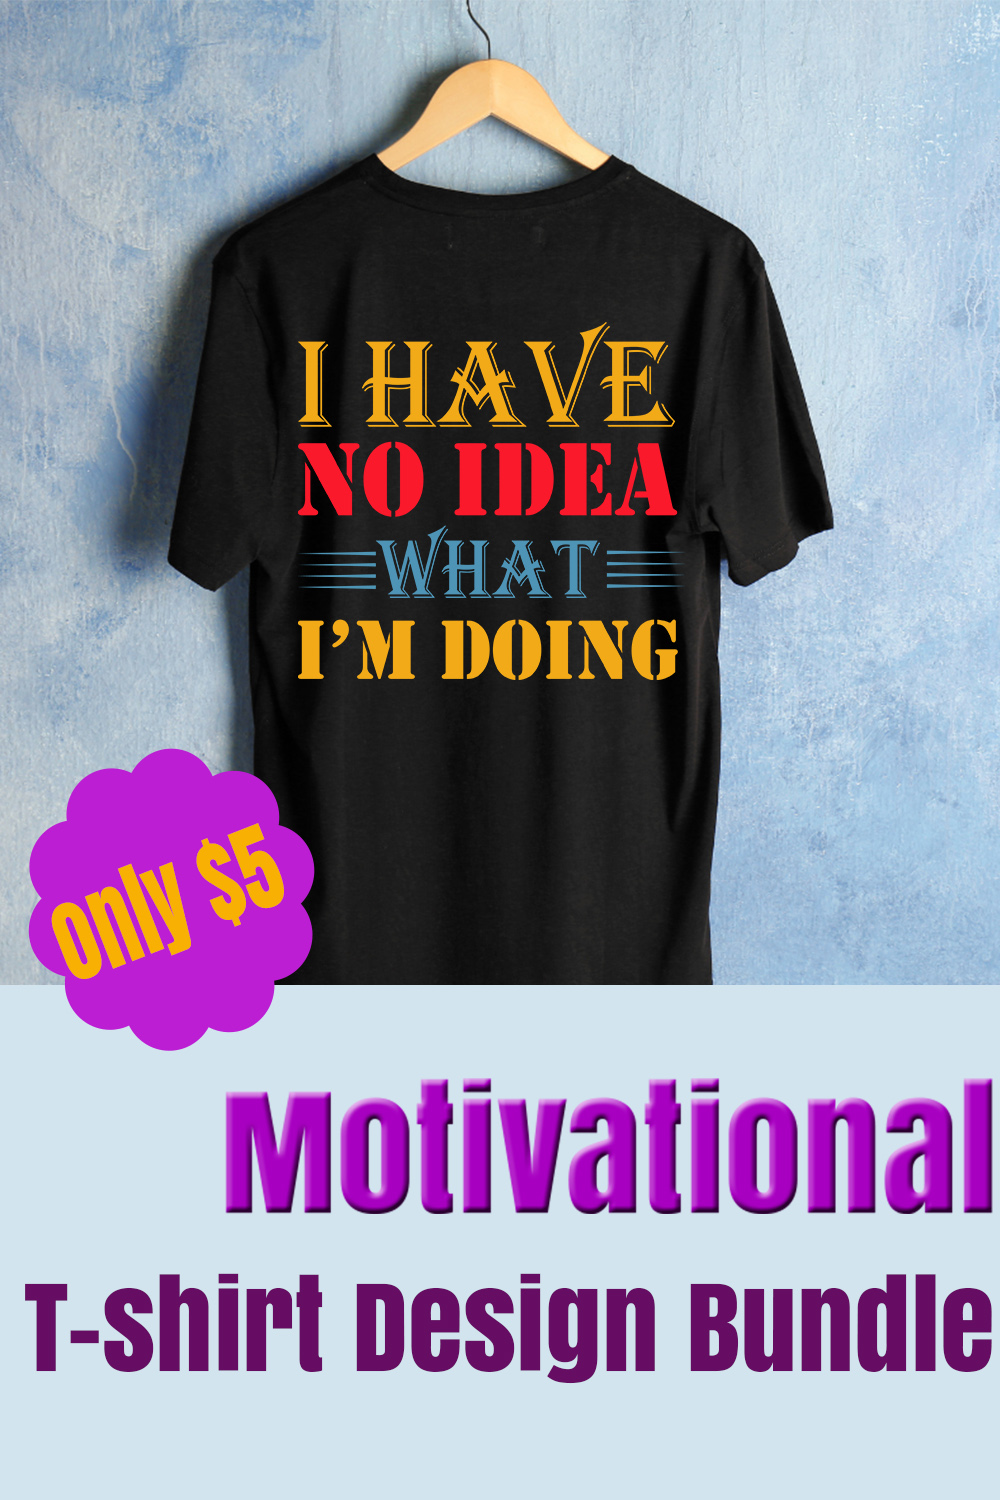 T-shirt Motivational SVG Design bundle pinterest image.